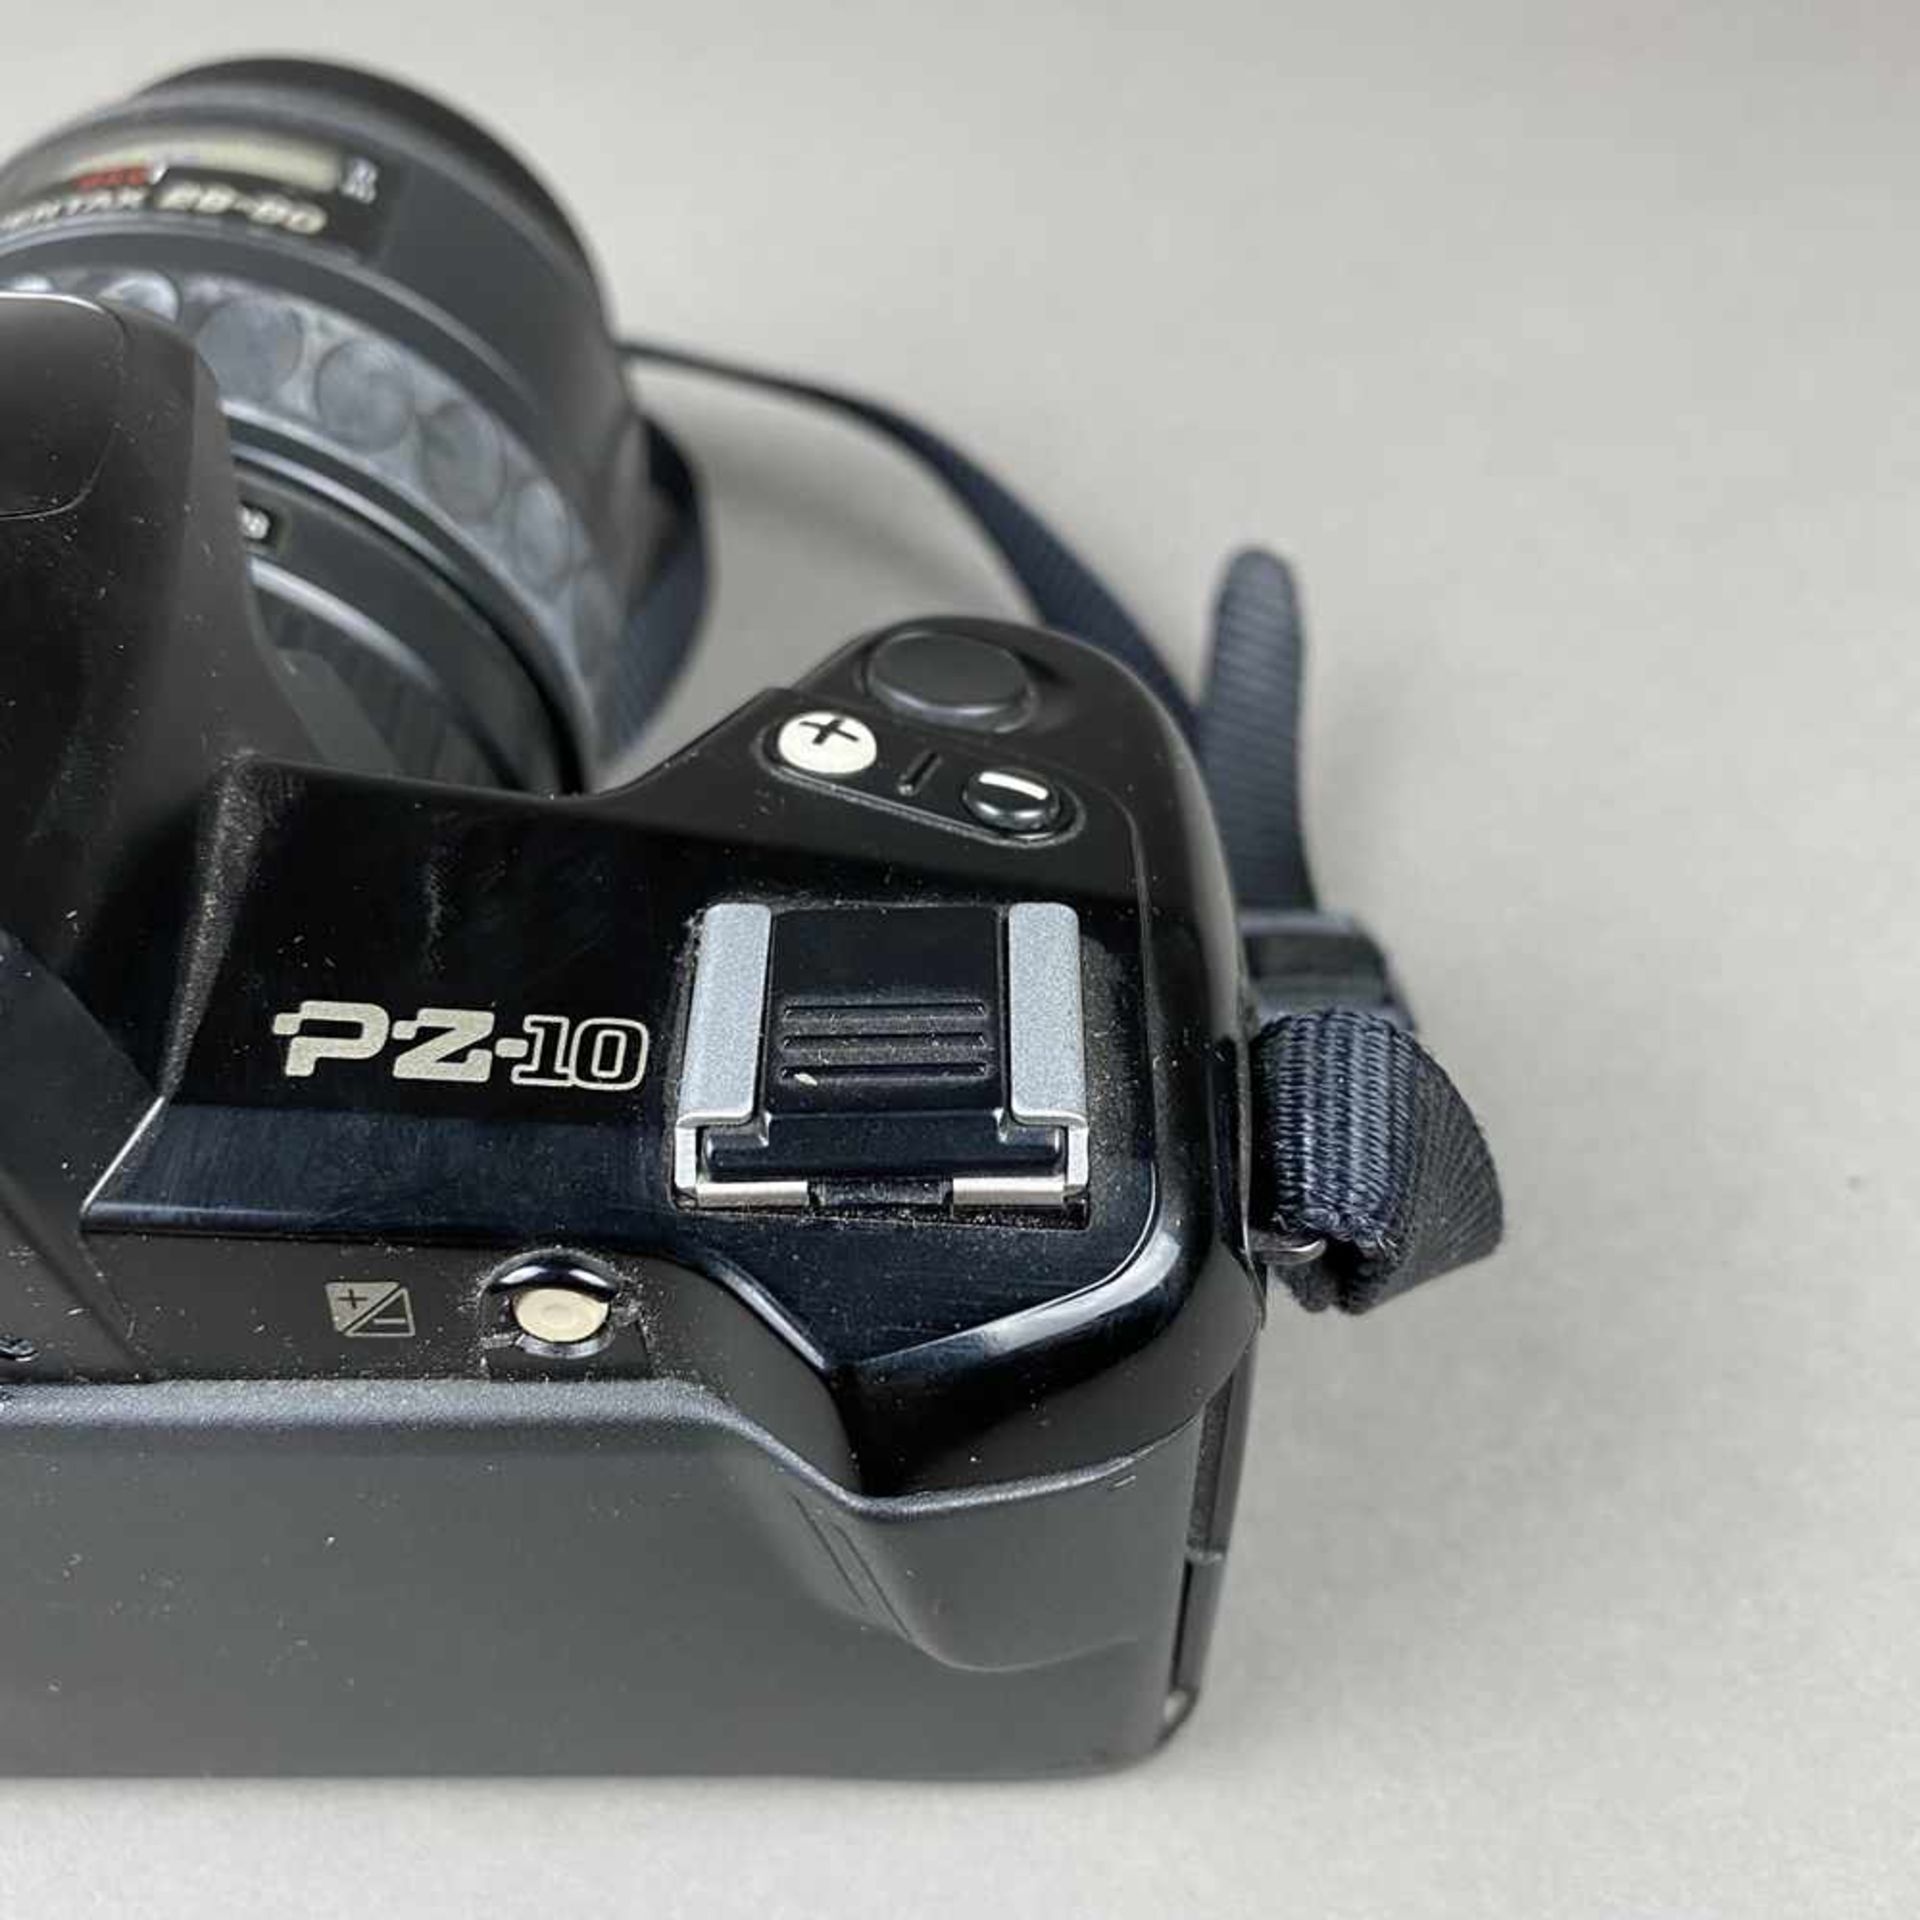 Spiegelreflex Kamera Pentax PZ-10 - Japan, Objektiv 1:3,5-4,7 / 28-80mm, gebrauchter Zustand, - Bild 5 aus 9